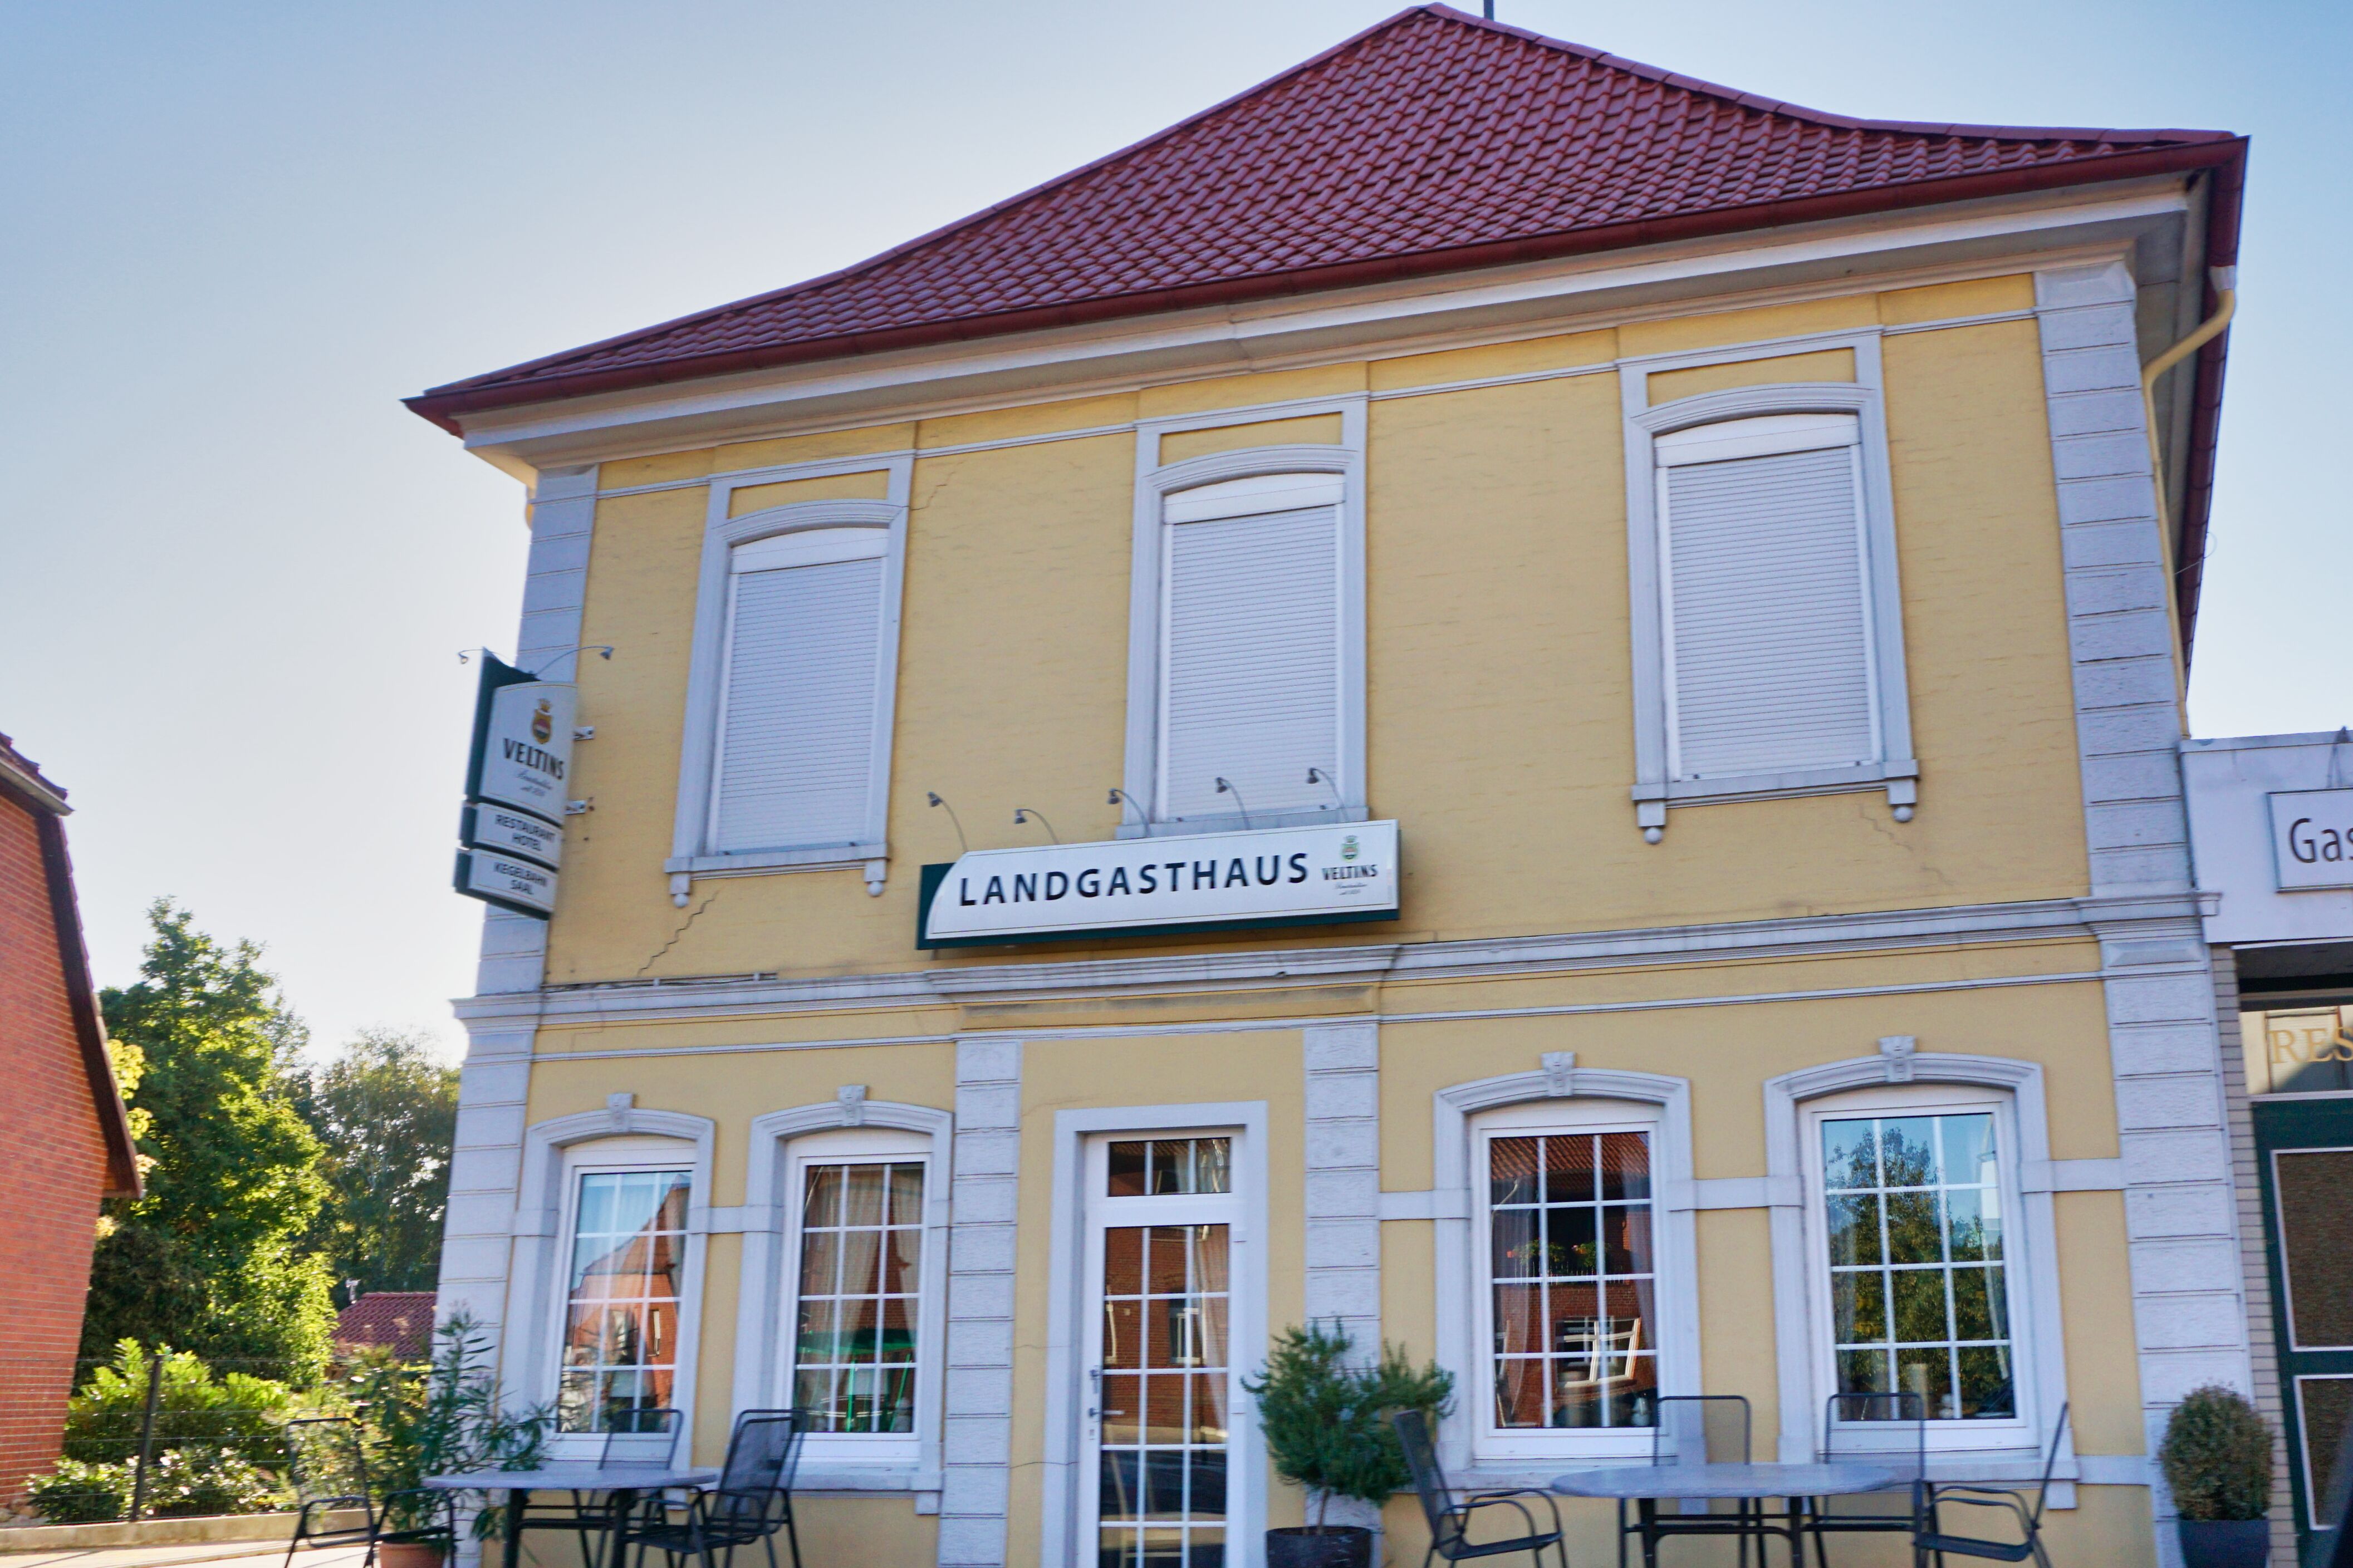 Landgasthaus Maschmann, Barenburg.